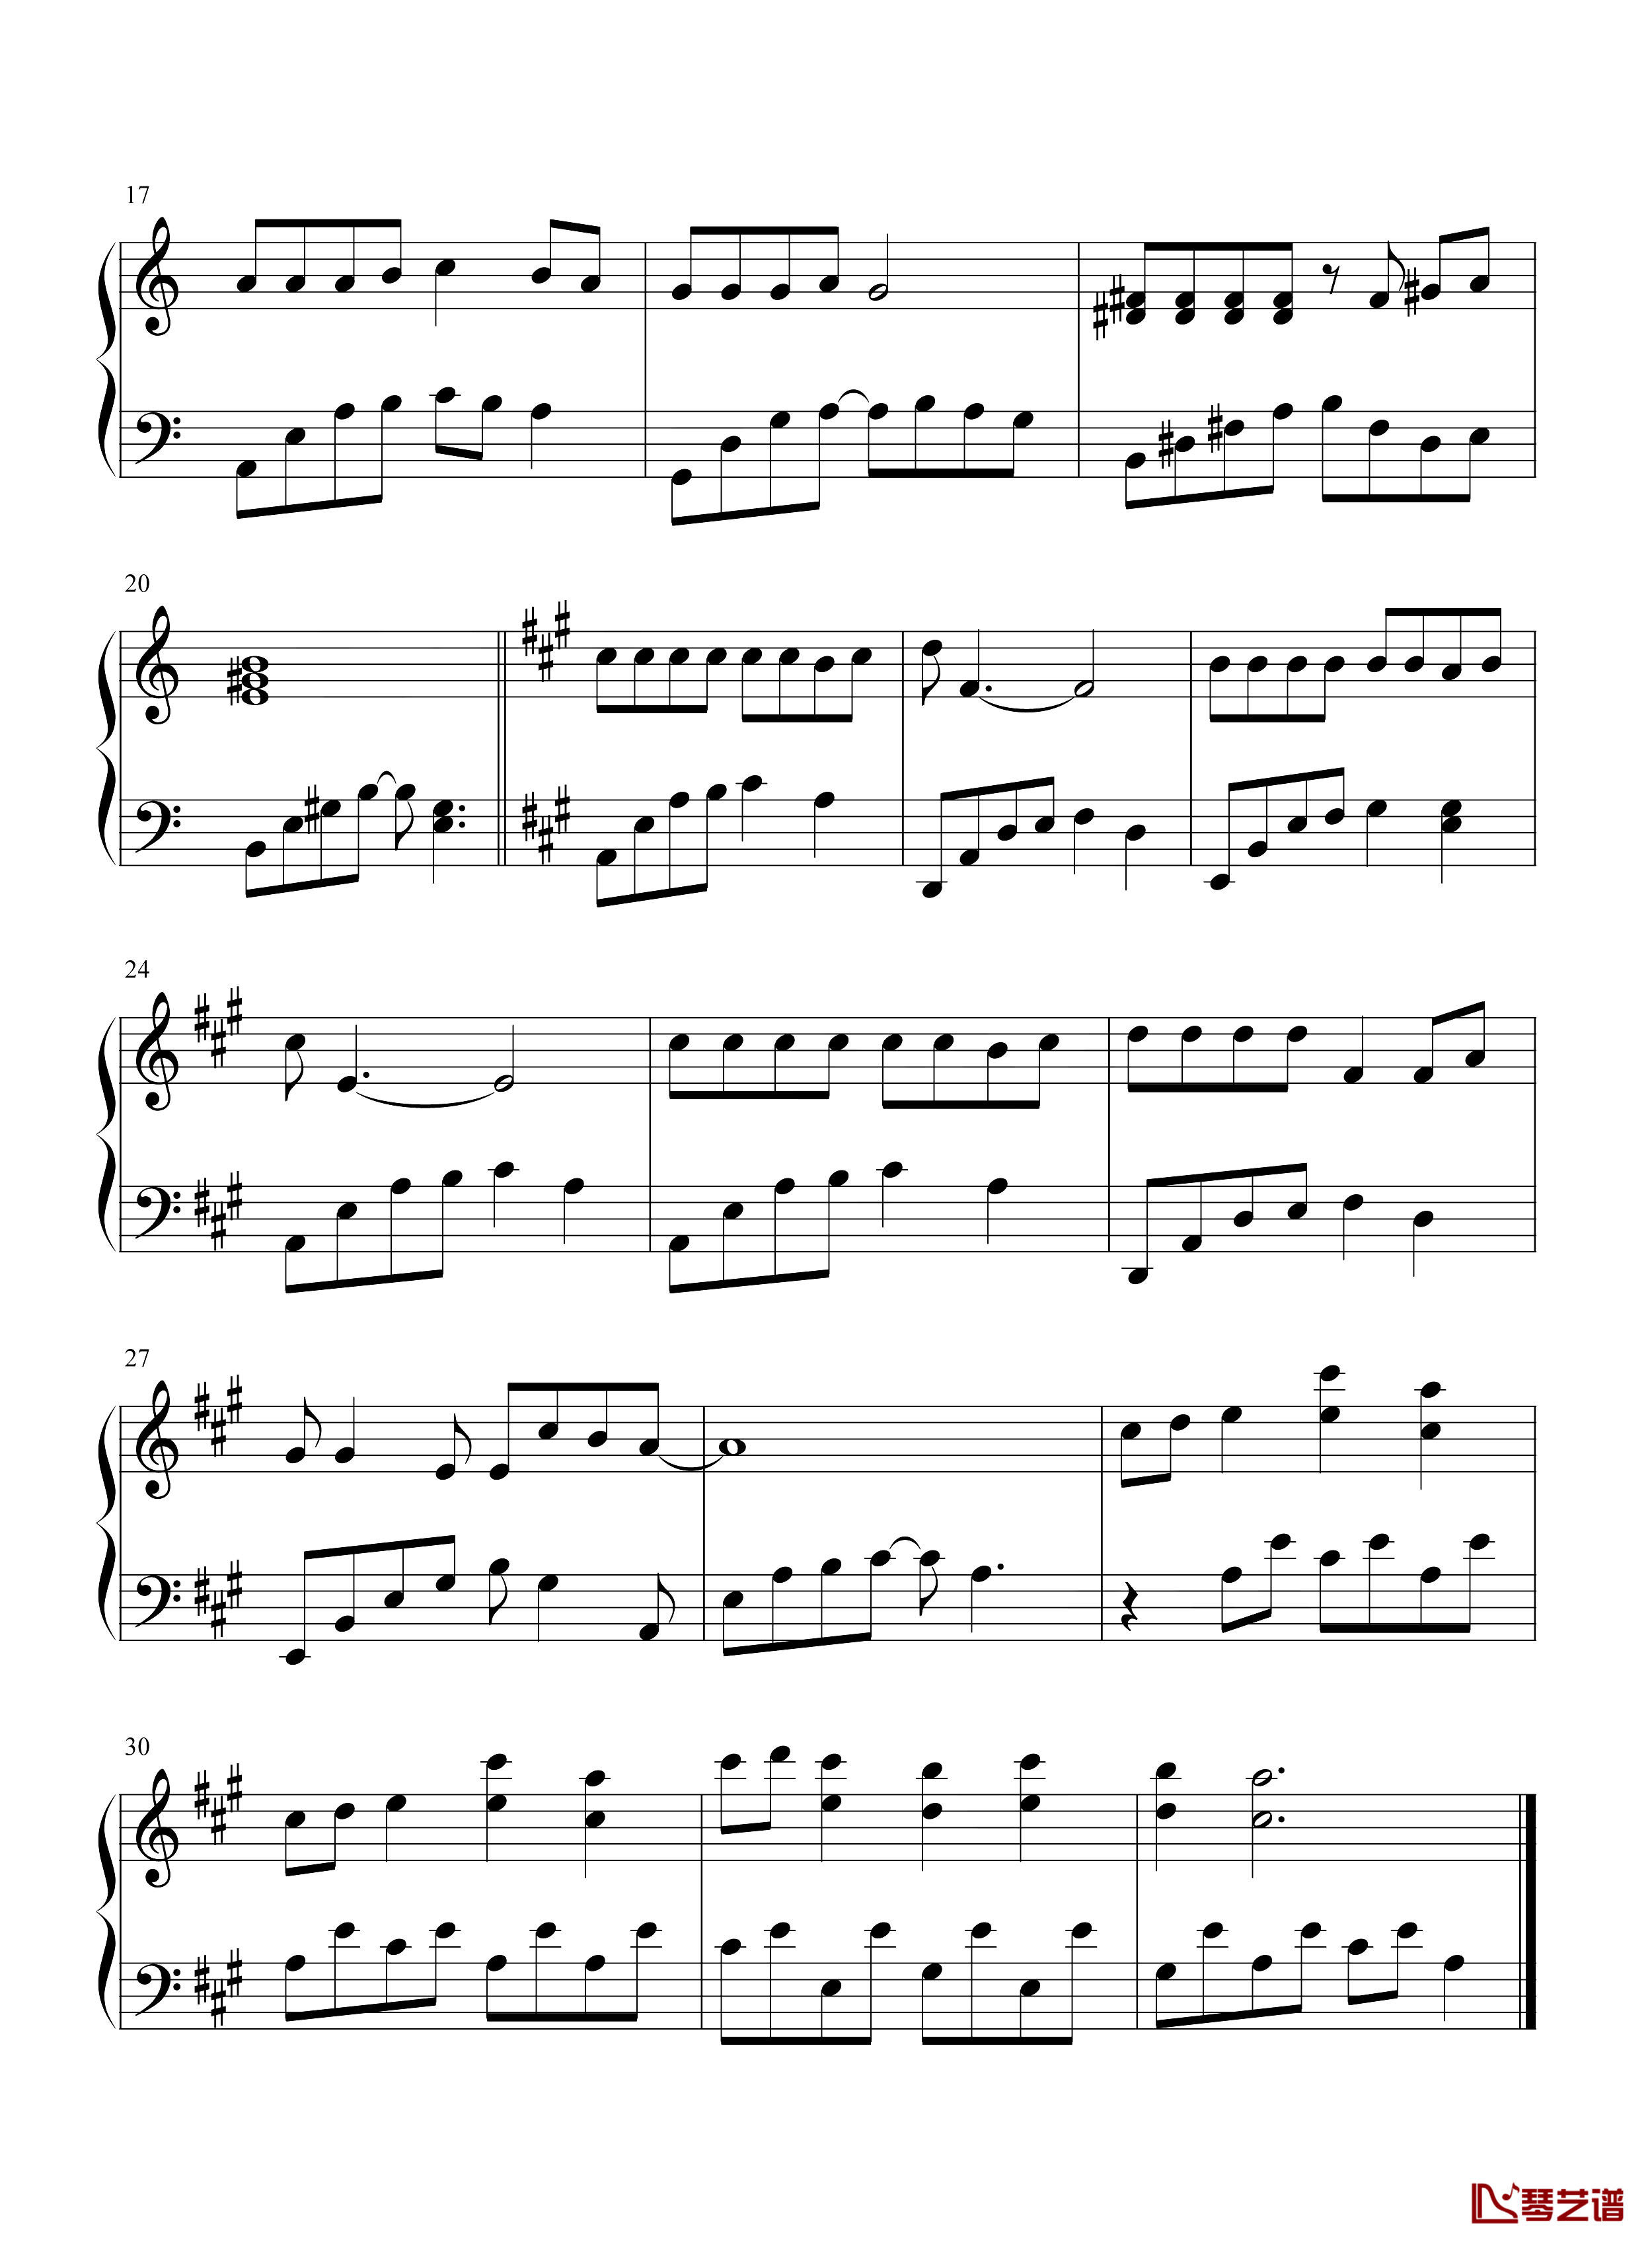 花仙子之歌钢琴谱-堀江美都子 ザ・チャーブス-动画《花仙子》的主题曲。2